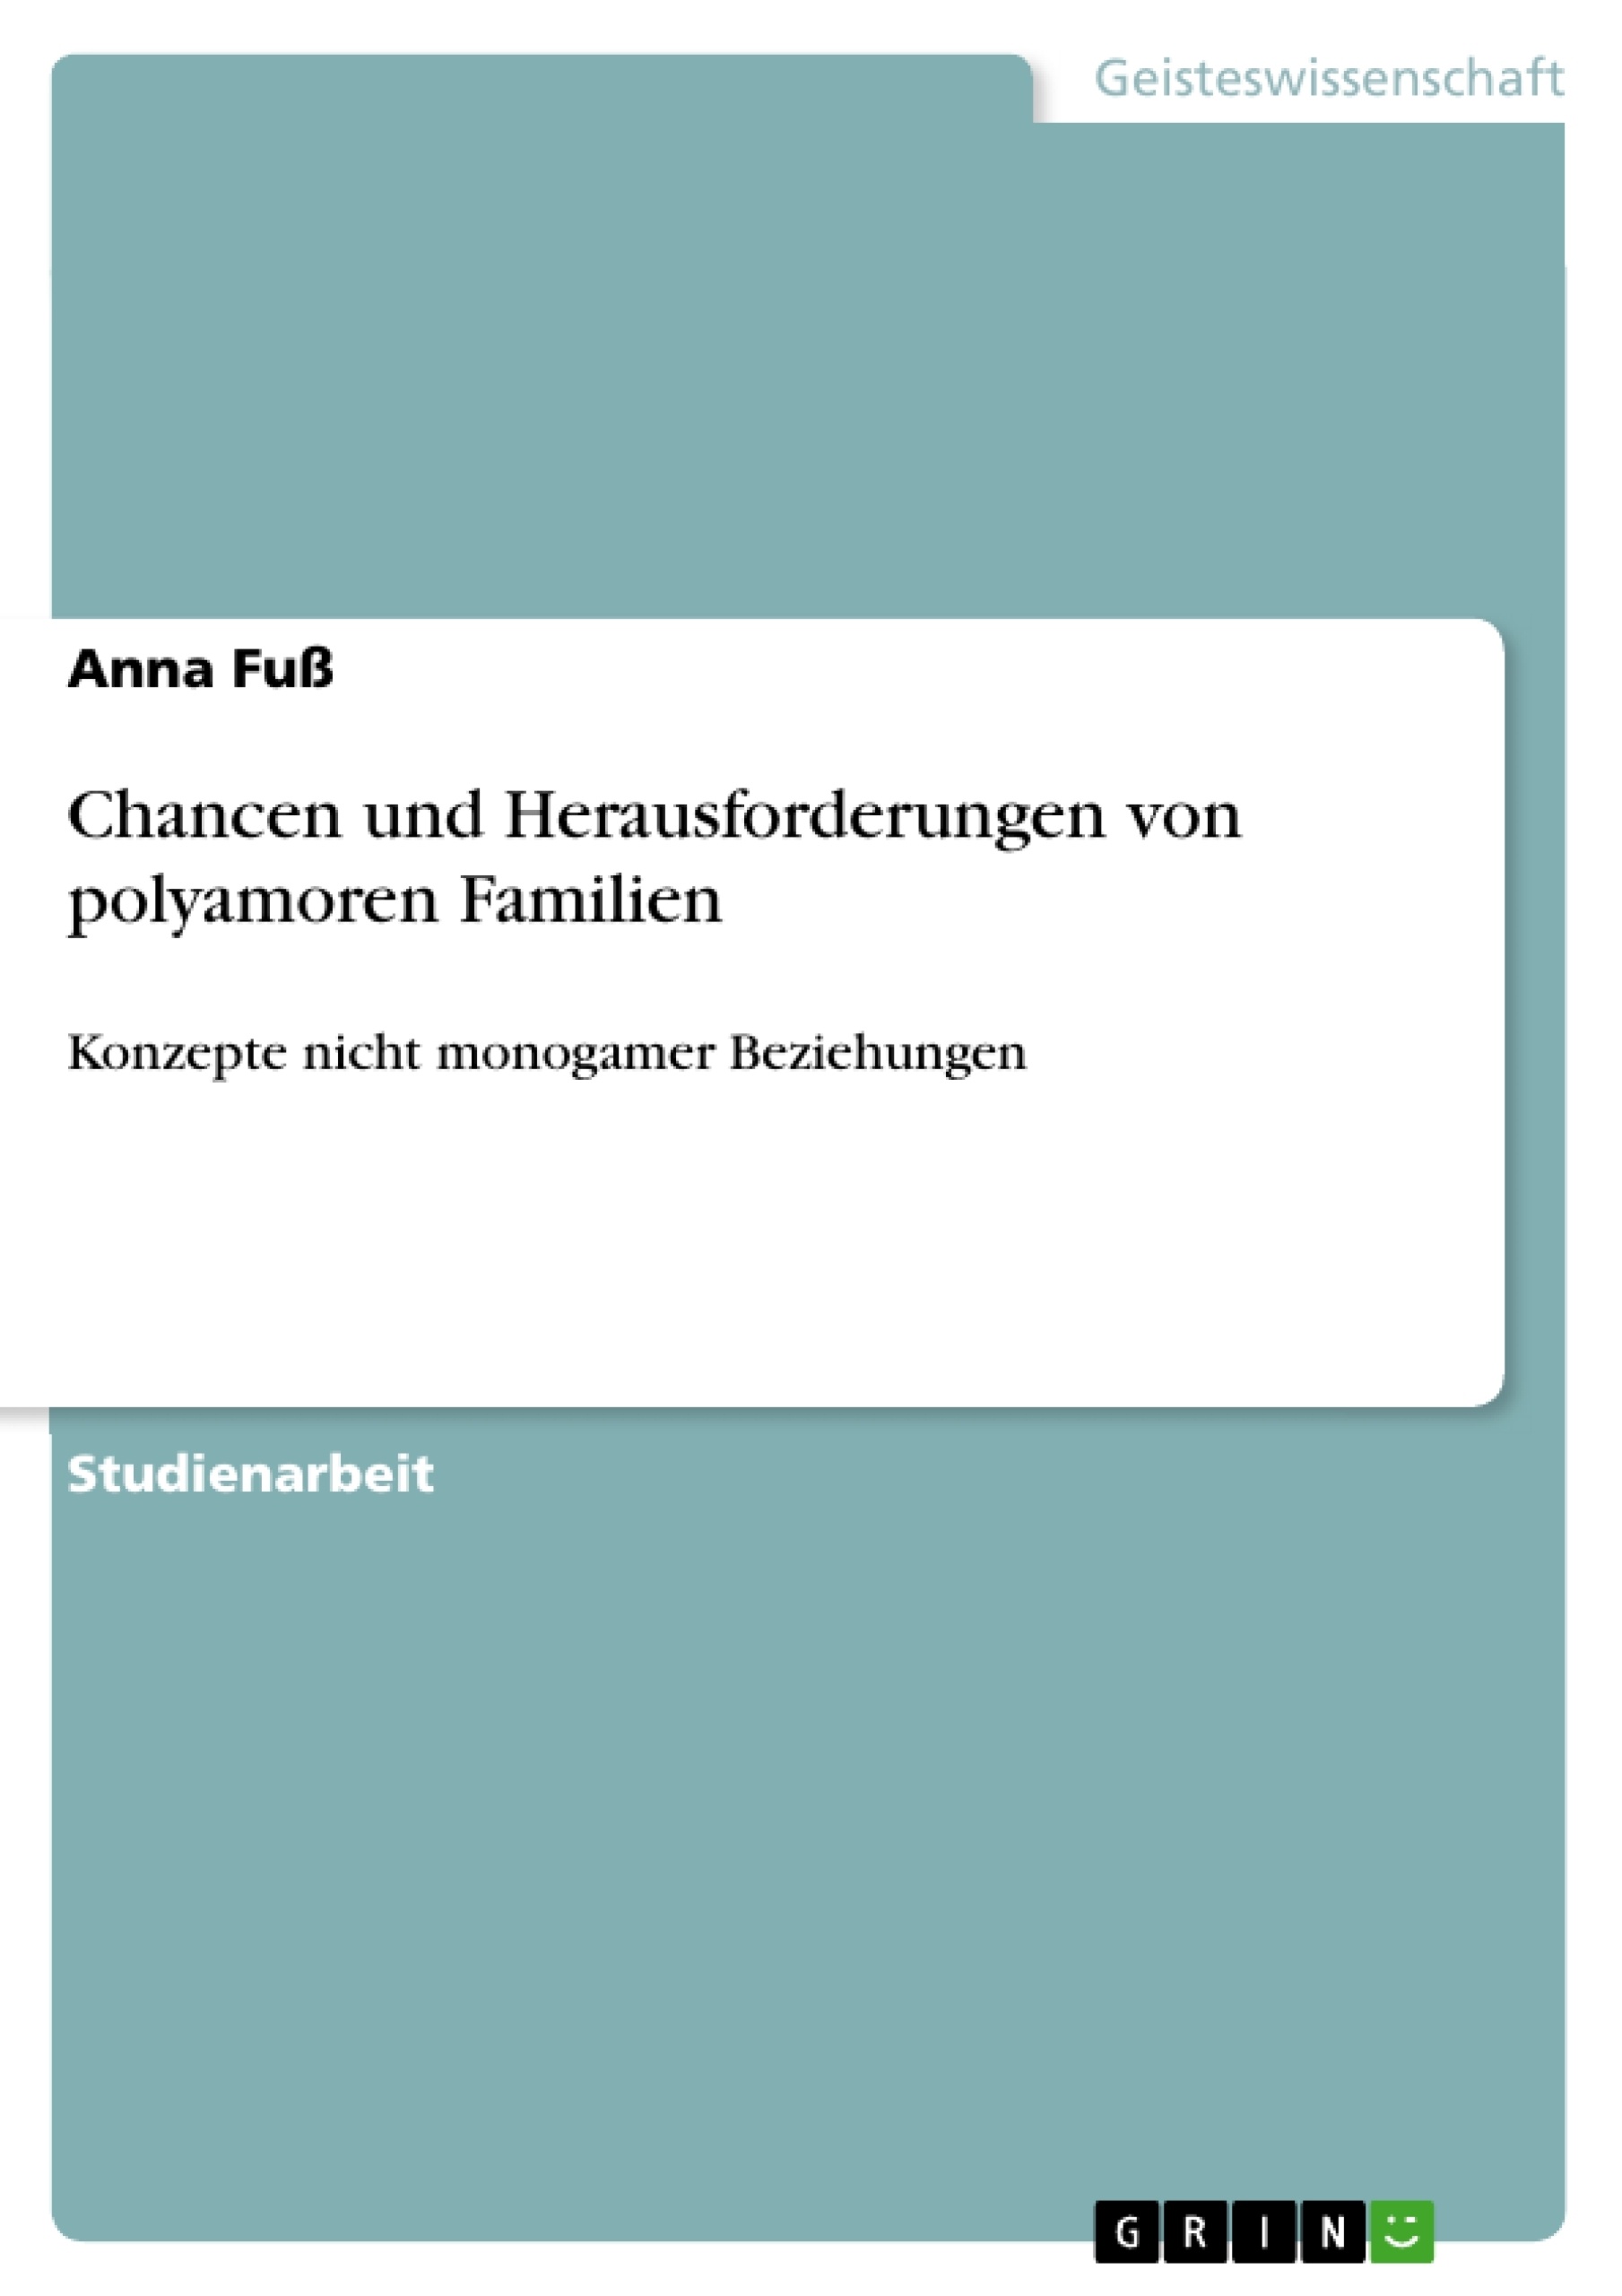 Title: Chancen und Herausforderungen von polyamoren Familien